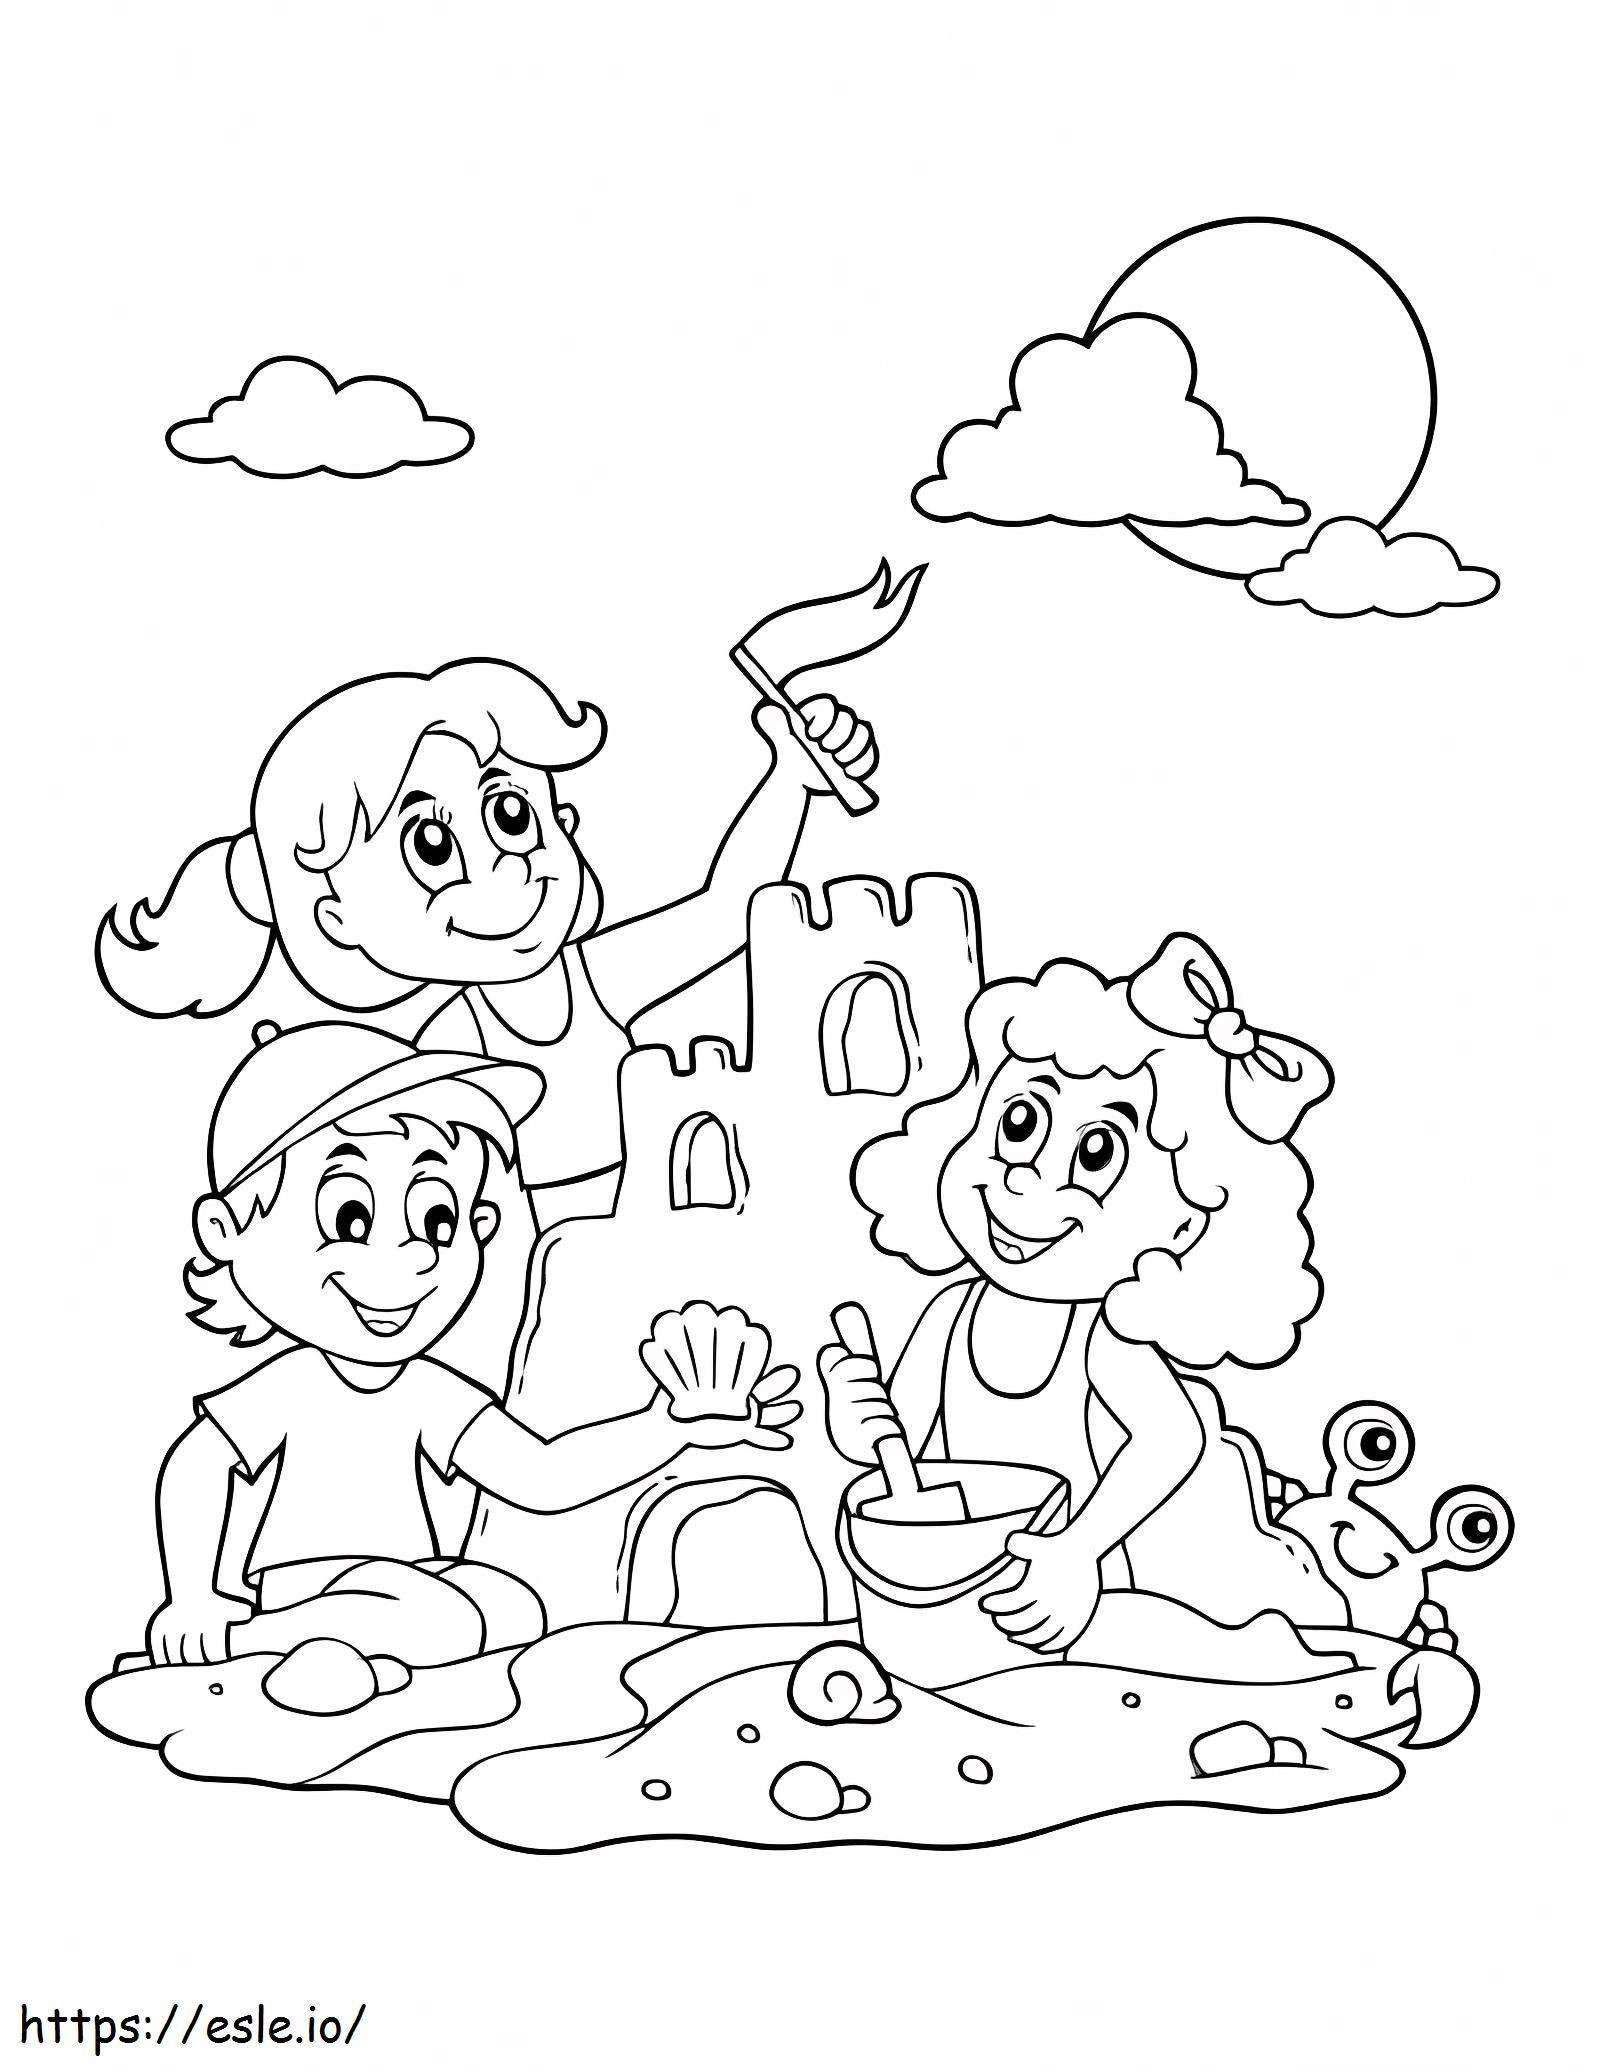 Tres niños construyen castillos de arena para colorear